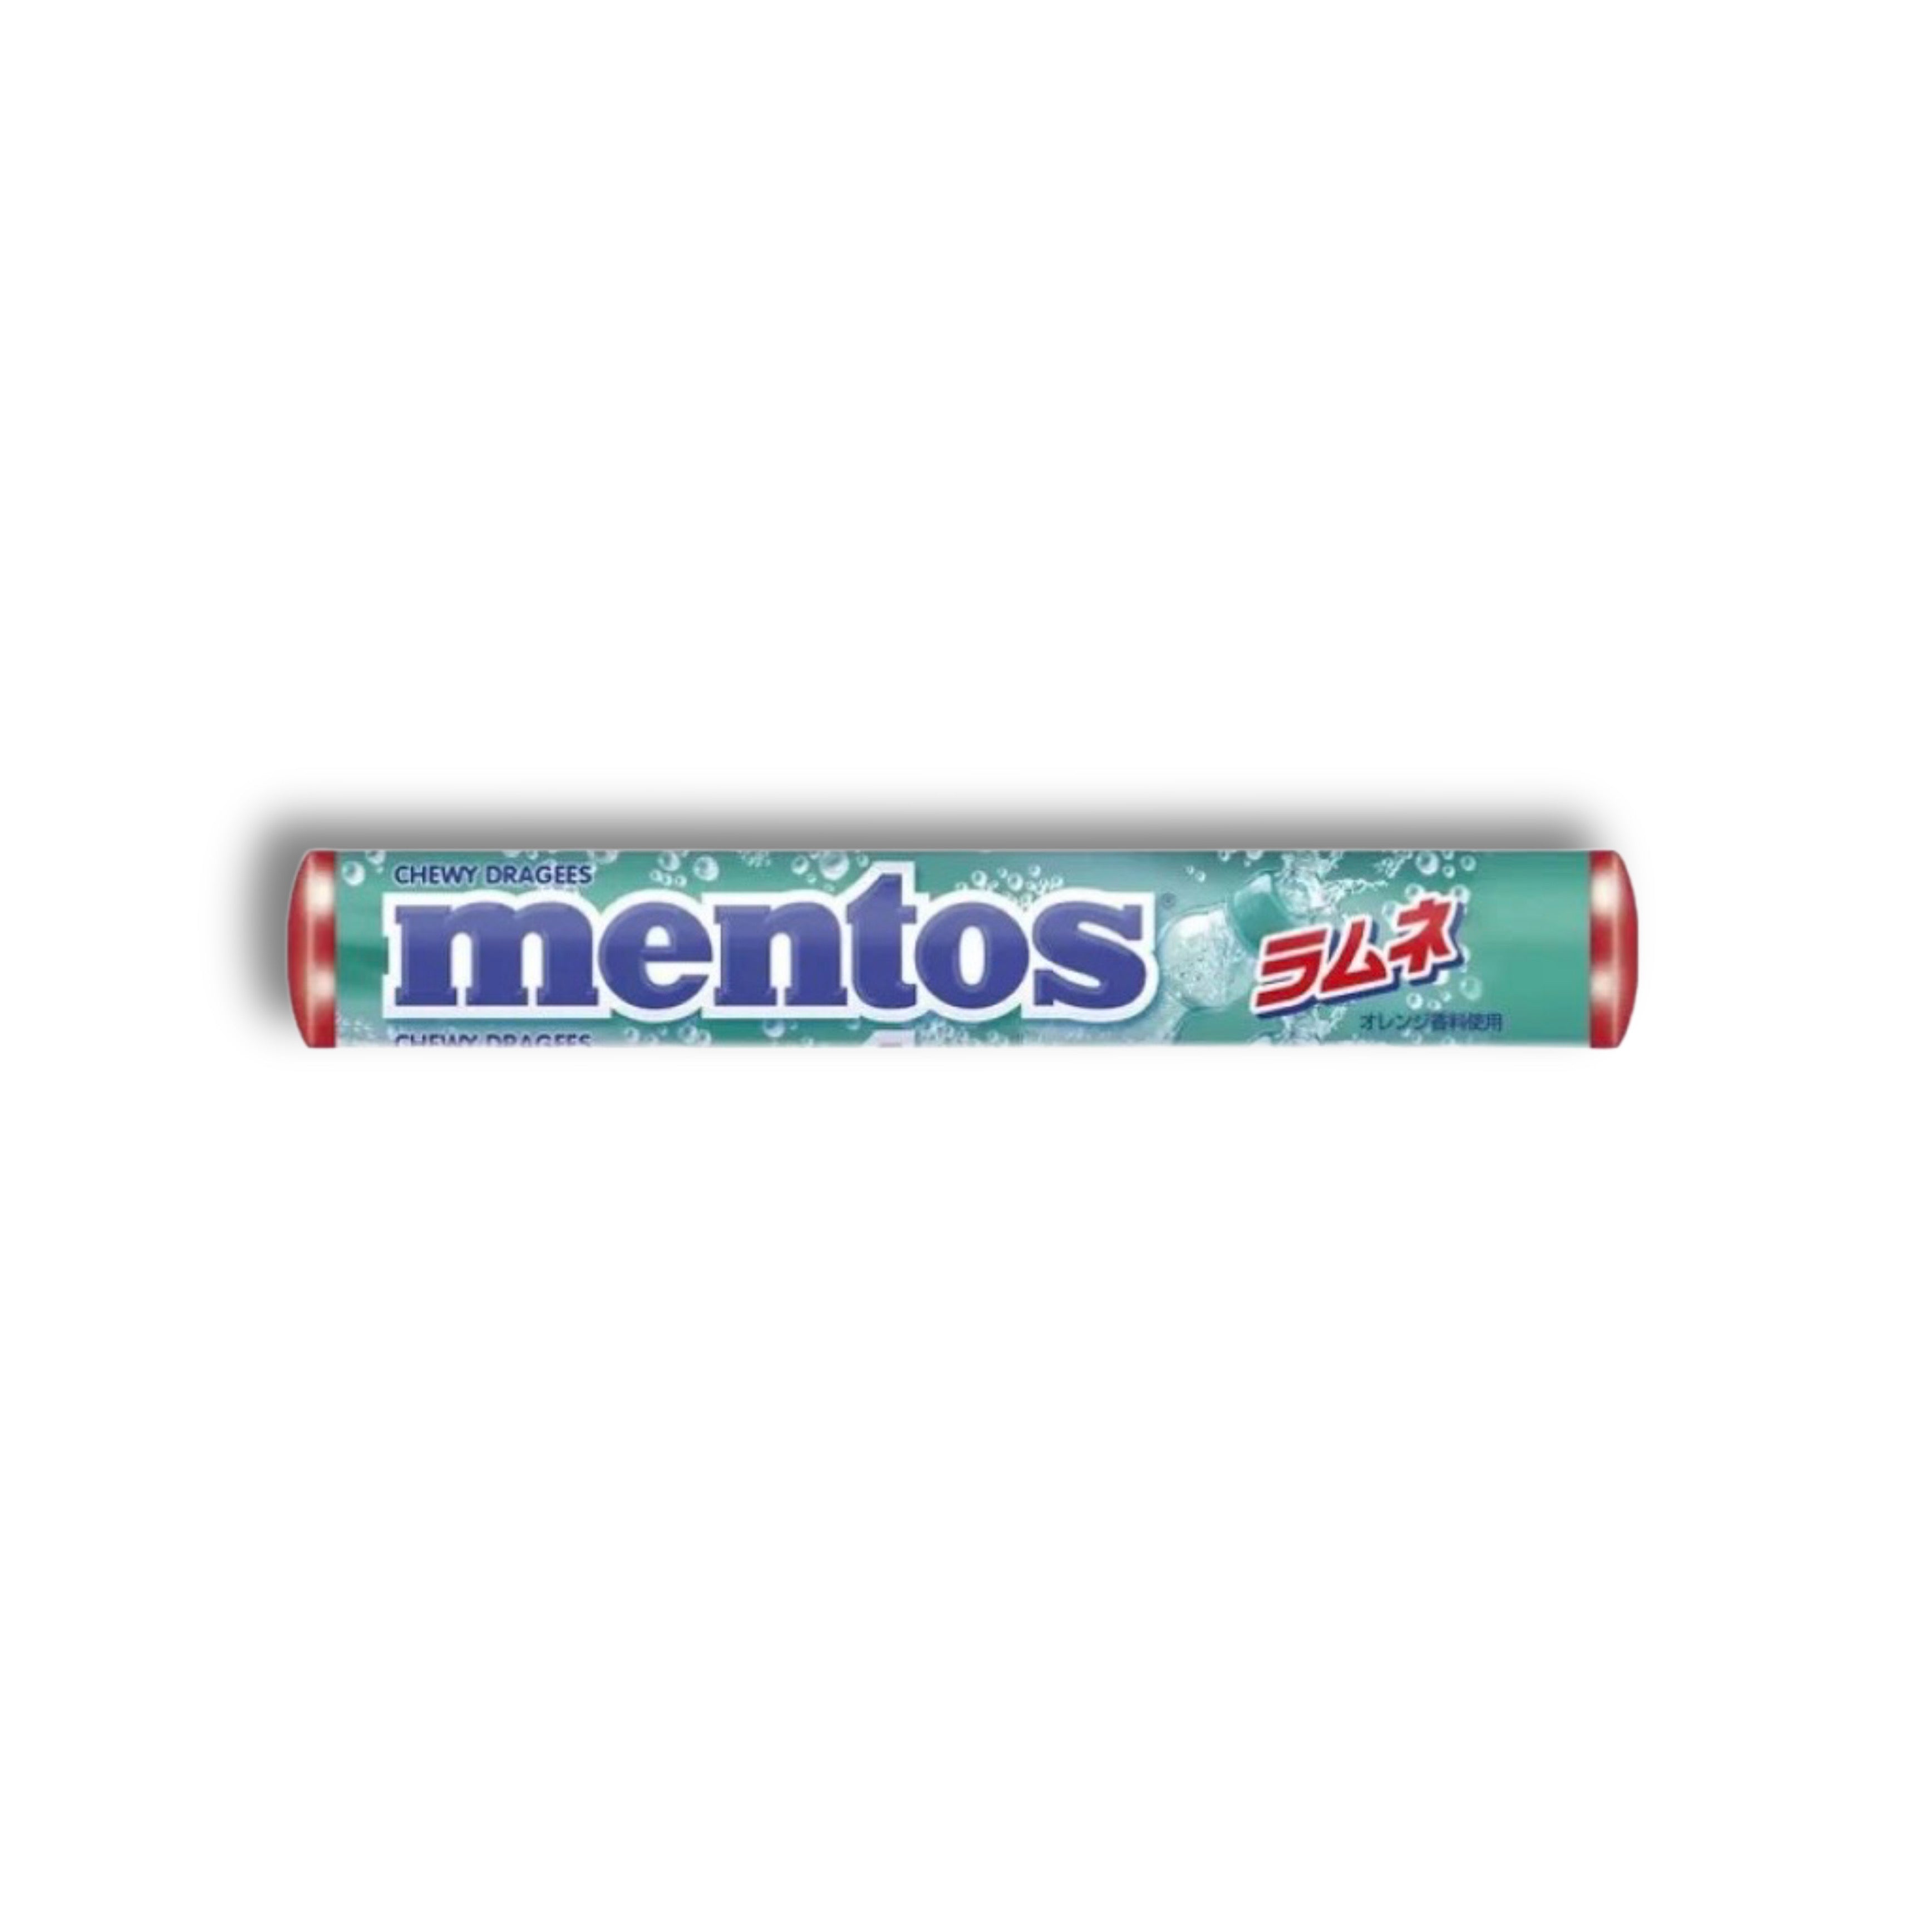 Mentos - Ramune Soda